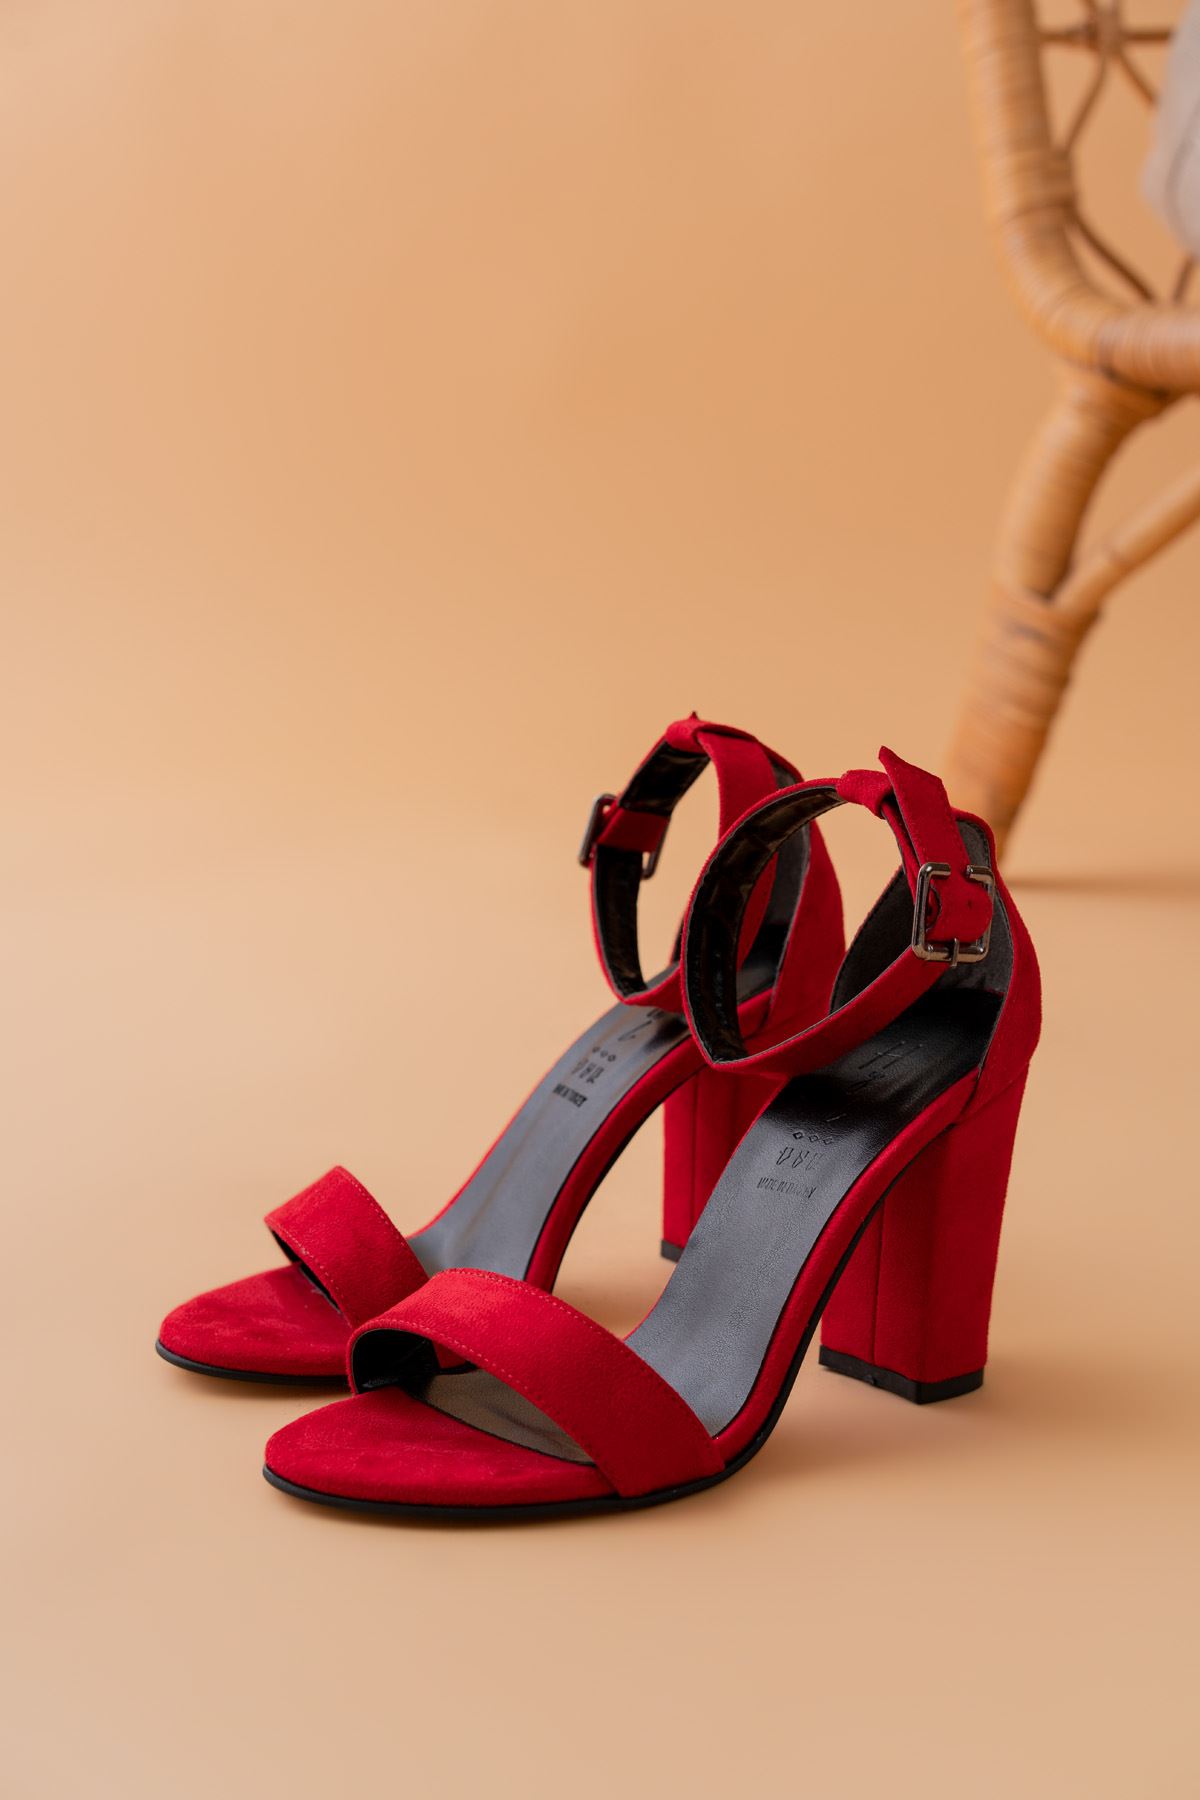 Evdokia Kırmızı Süet Topuklu Kadın Ayakkabı  